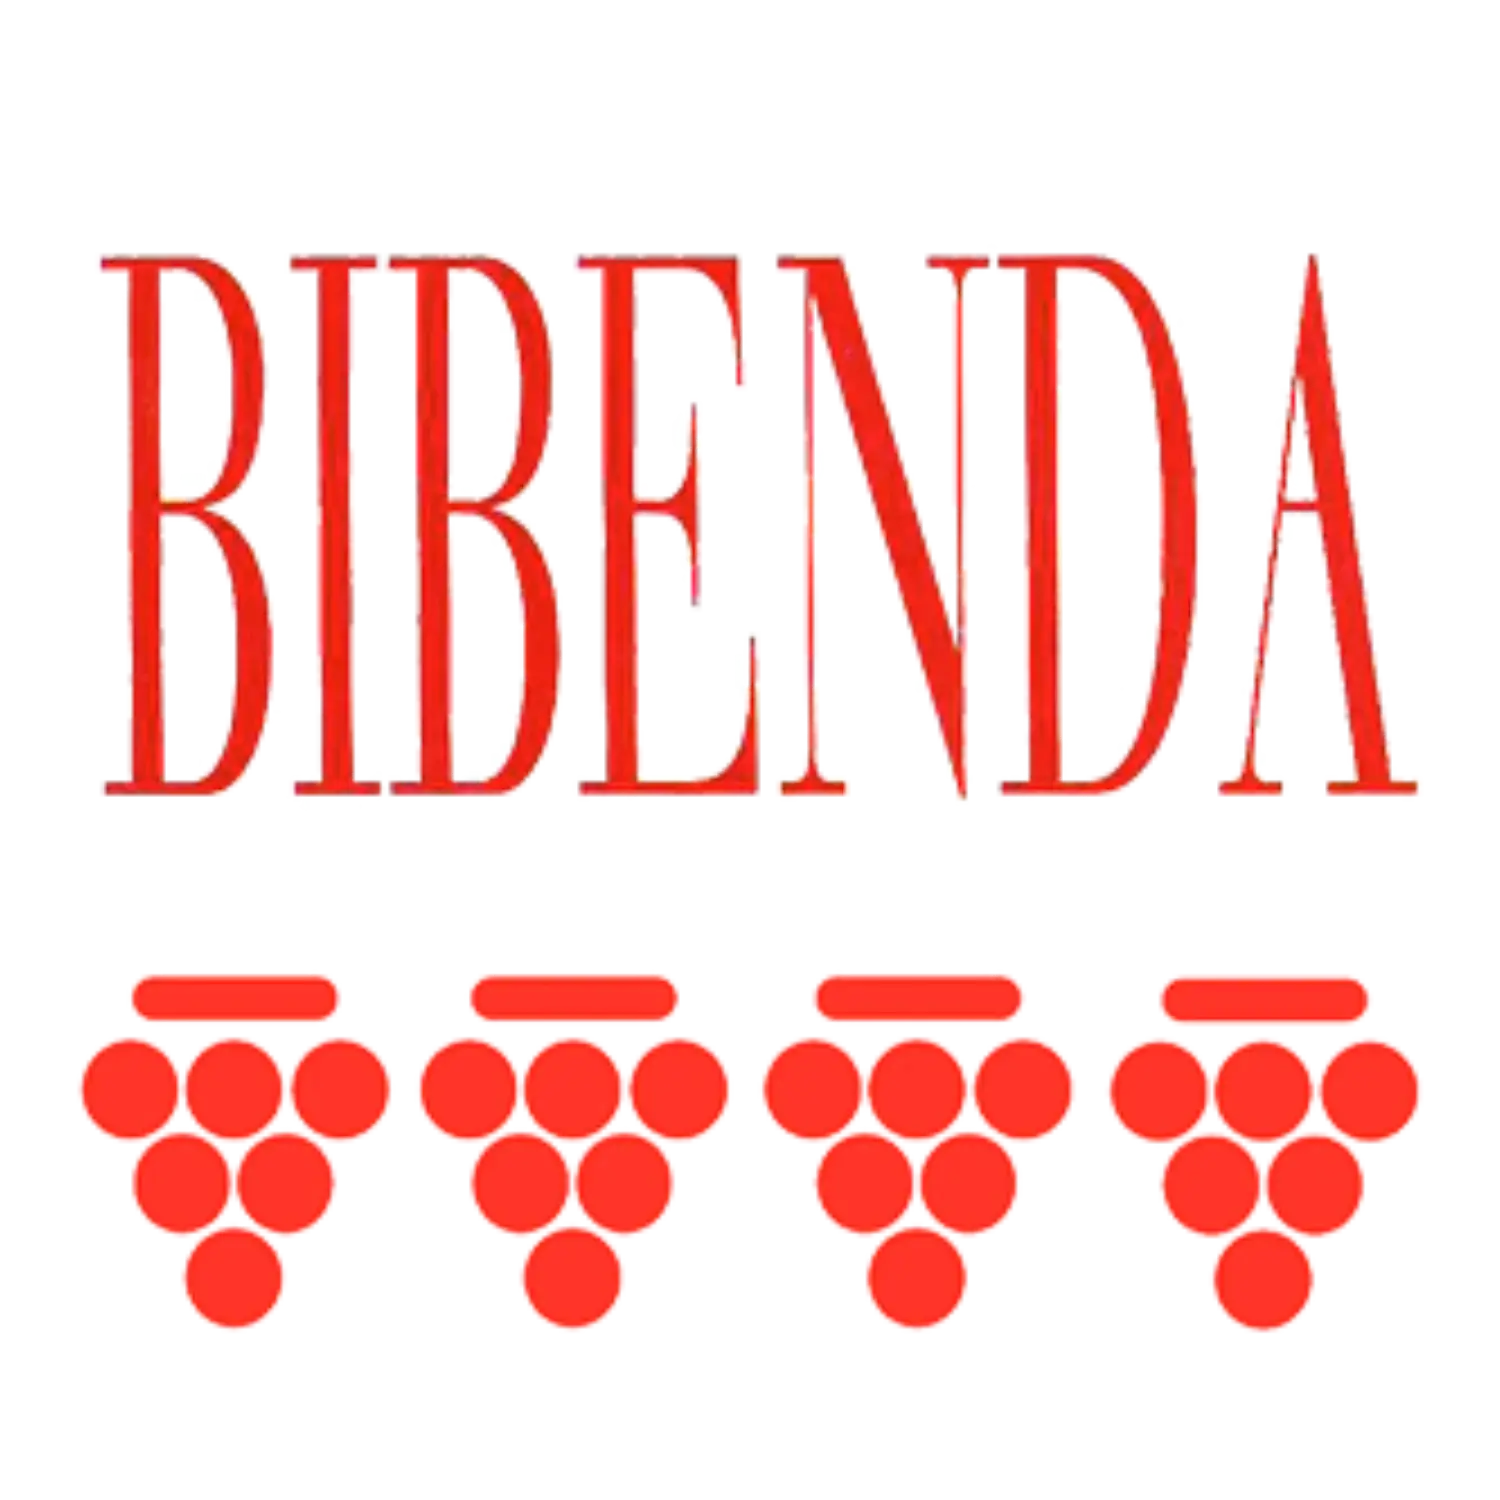 Titlu in culoarea rosie "Bibenda" si 4 struguri de culoare rosie, reprezentand premium "Bibenda 4 grappoli"